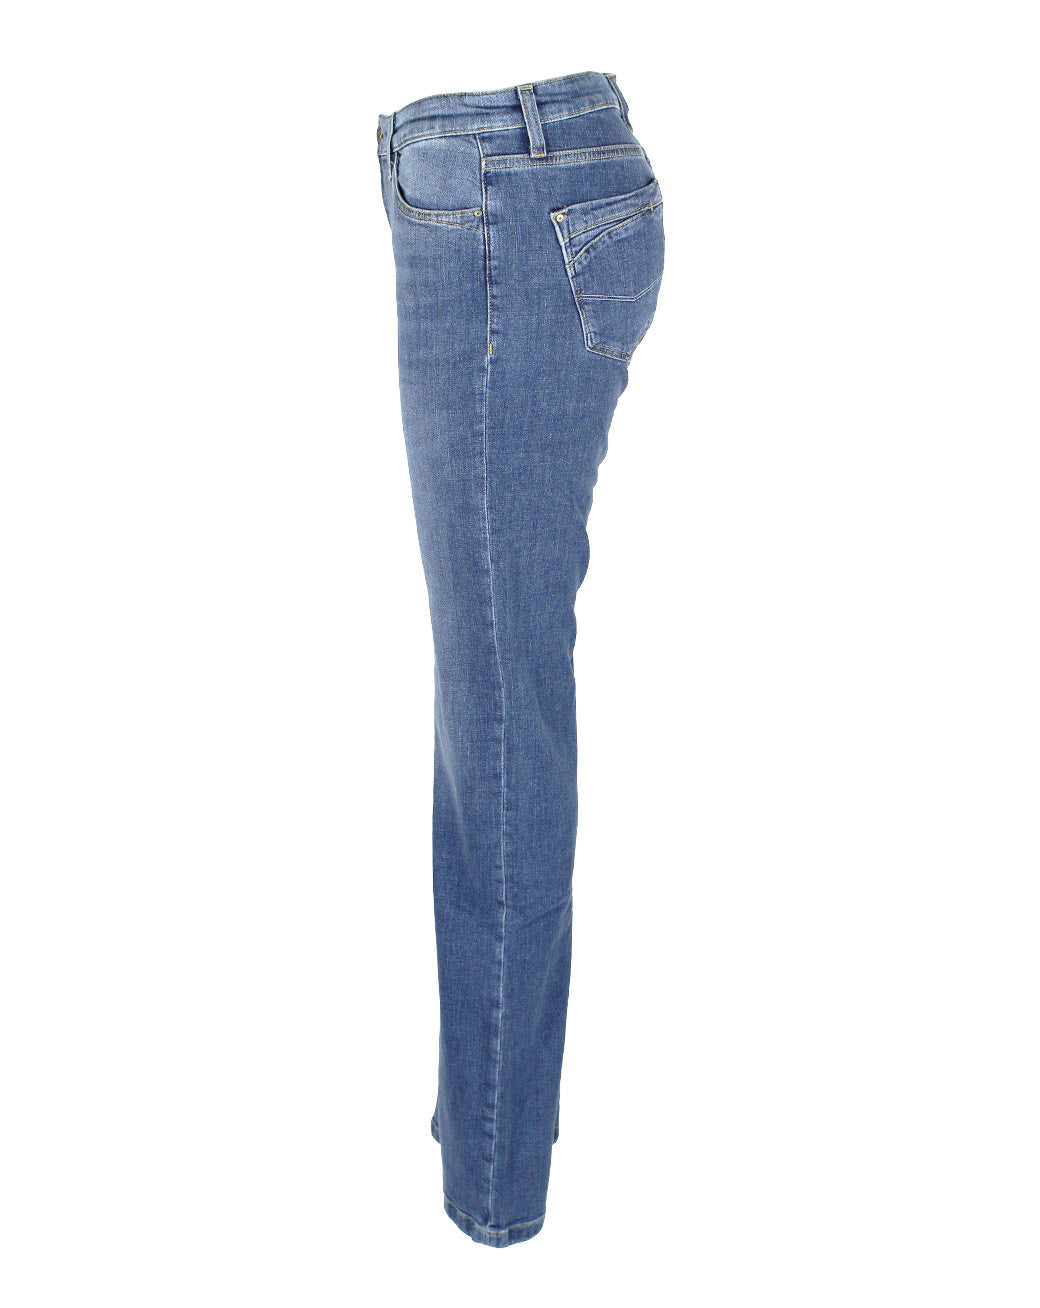 clothing tall women cross jeans lauren bleached